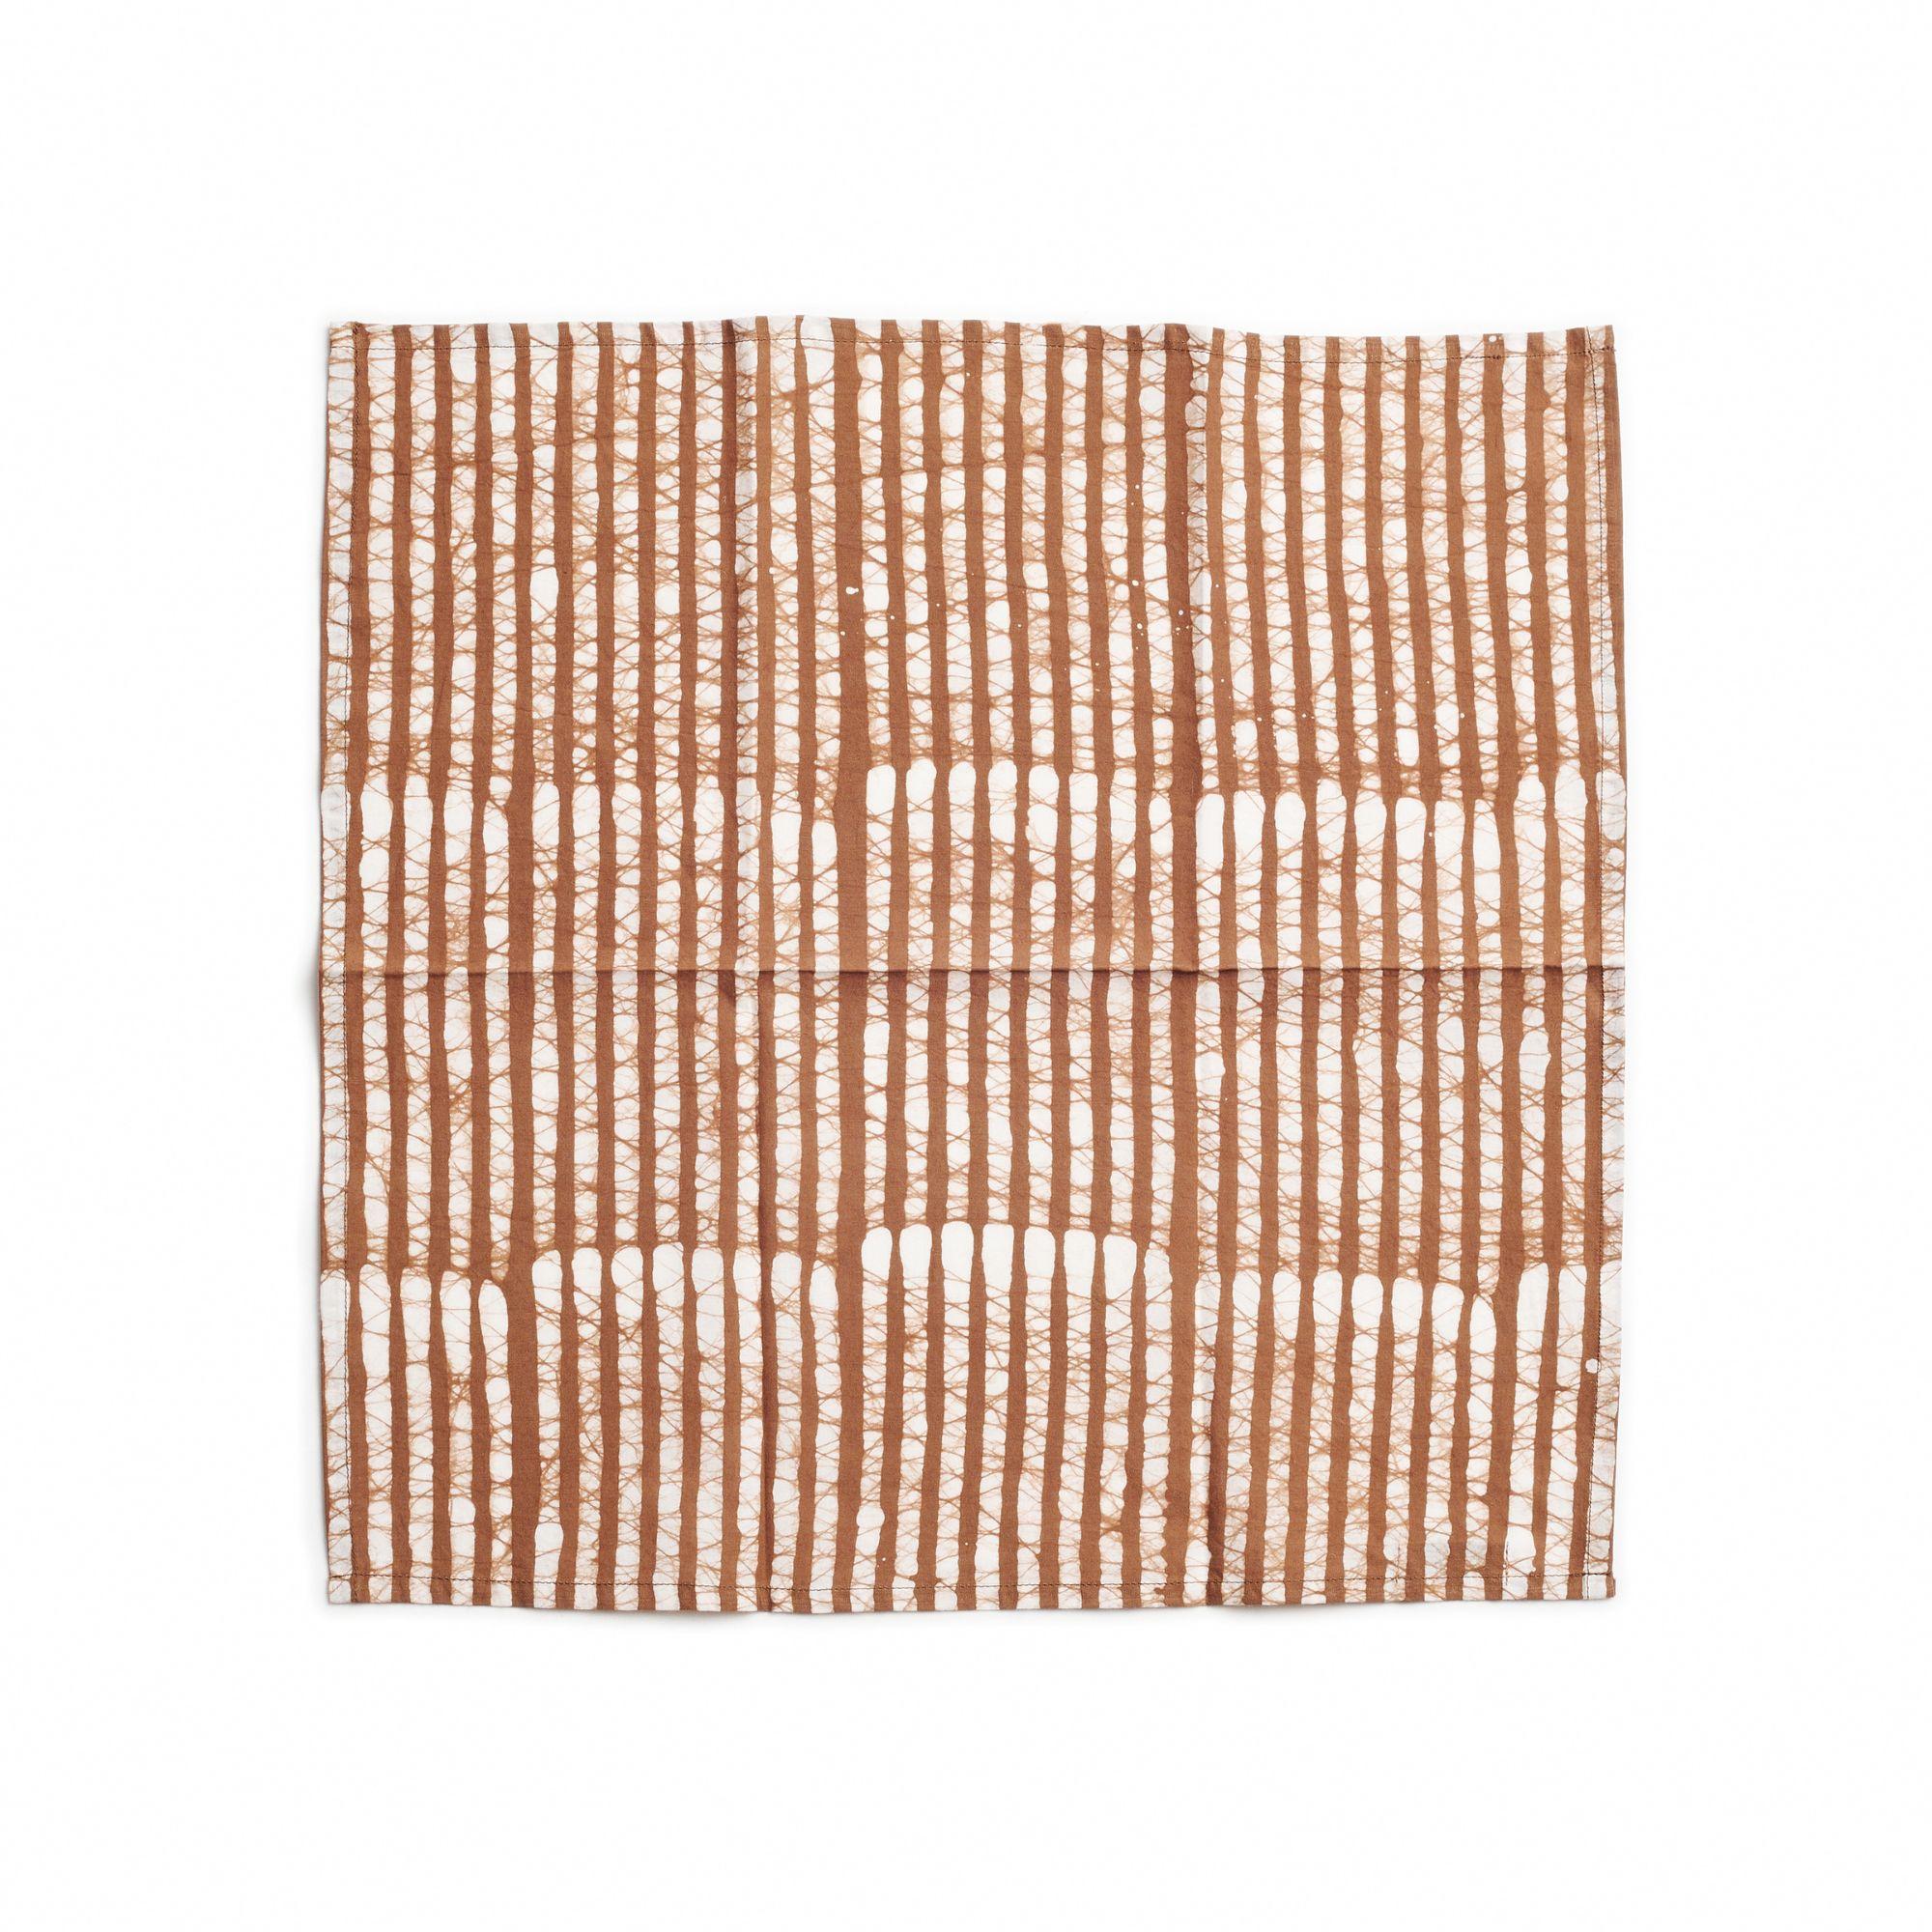 La serviette de table Oak Brown est une serviette artisanale unique et moderne. Créée de manière artistique et éthique par des artisans en Inde selon la technique d'impression au bloc de cire, en utilisant uniquement des teintures naturelles pures.